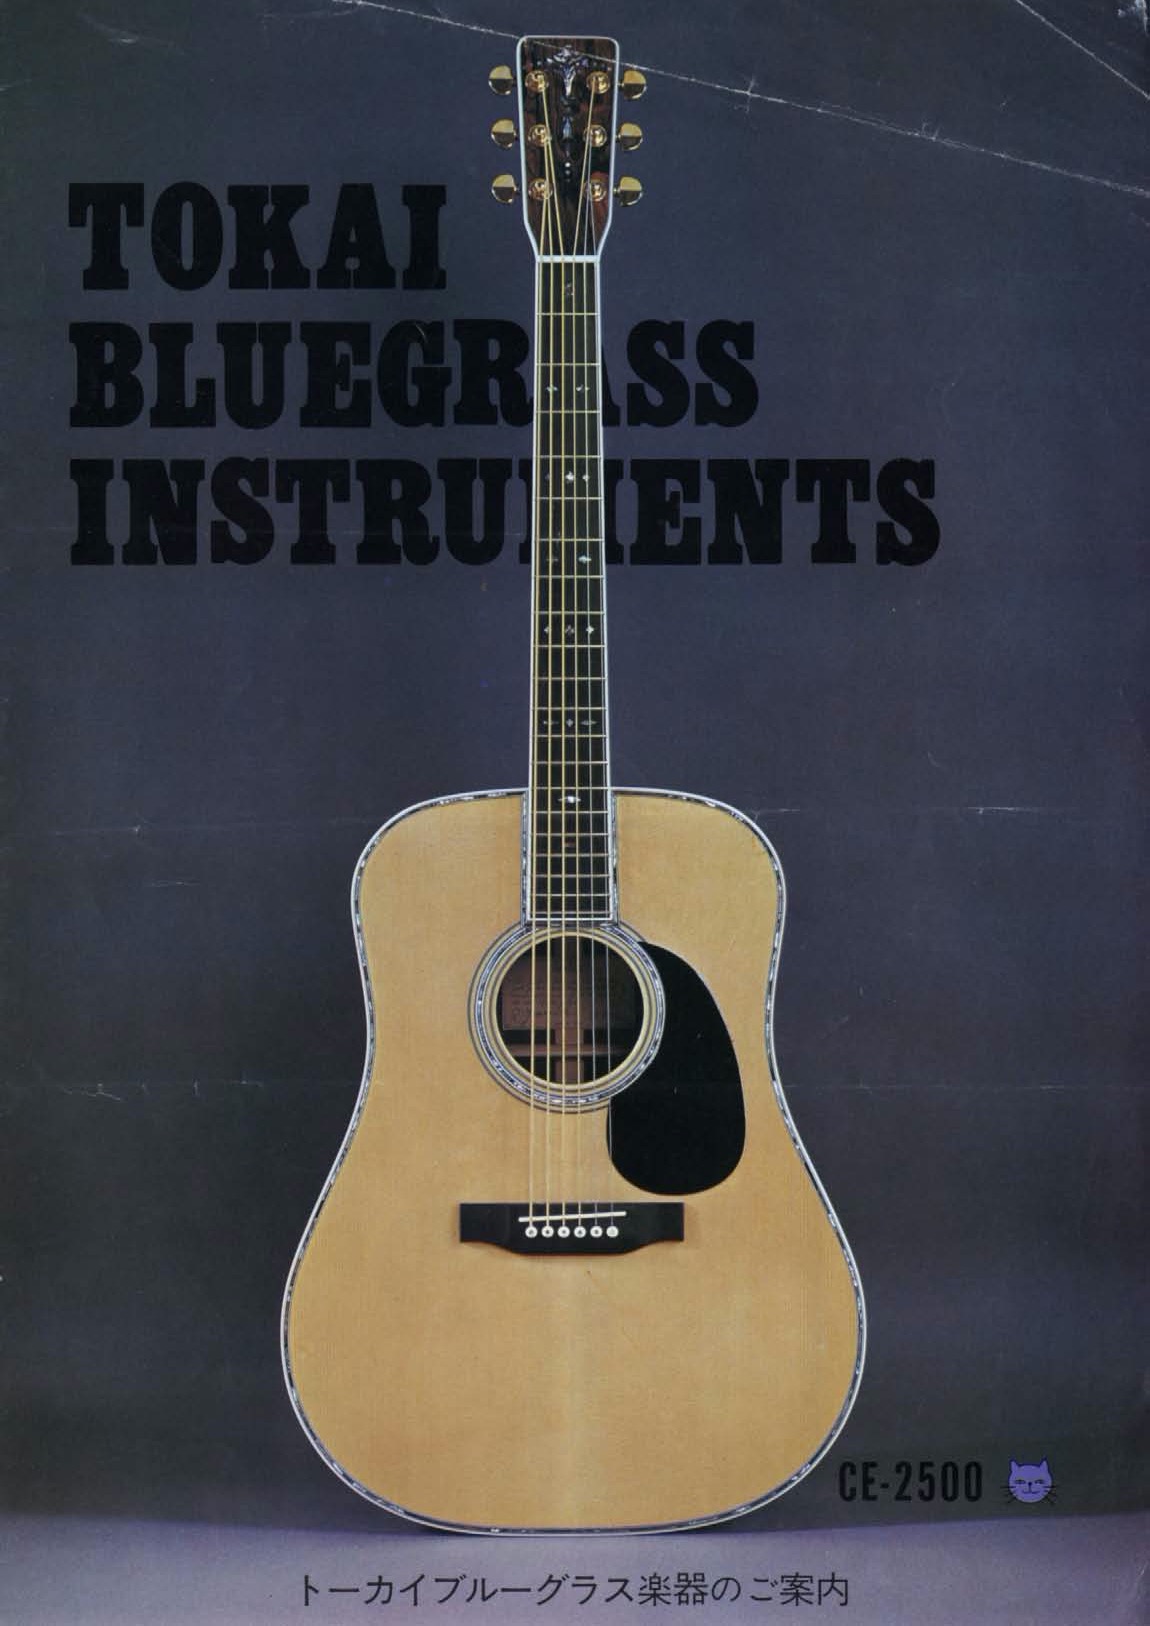 1975年 TOKAIアコースティックギター（Cat's Eyes  Martin）カタログ - ビンテージギターカタログ